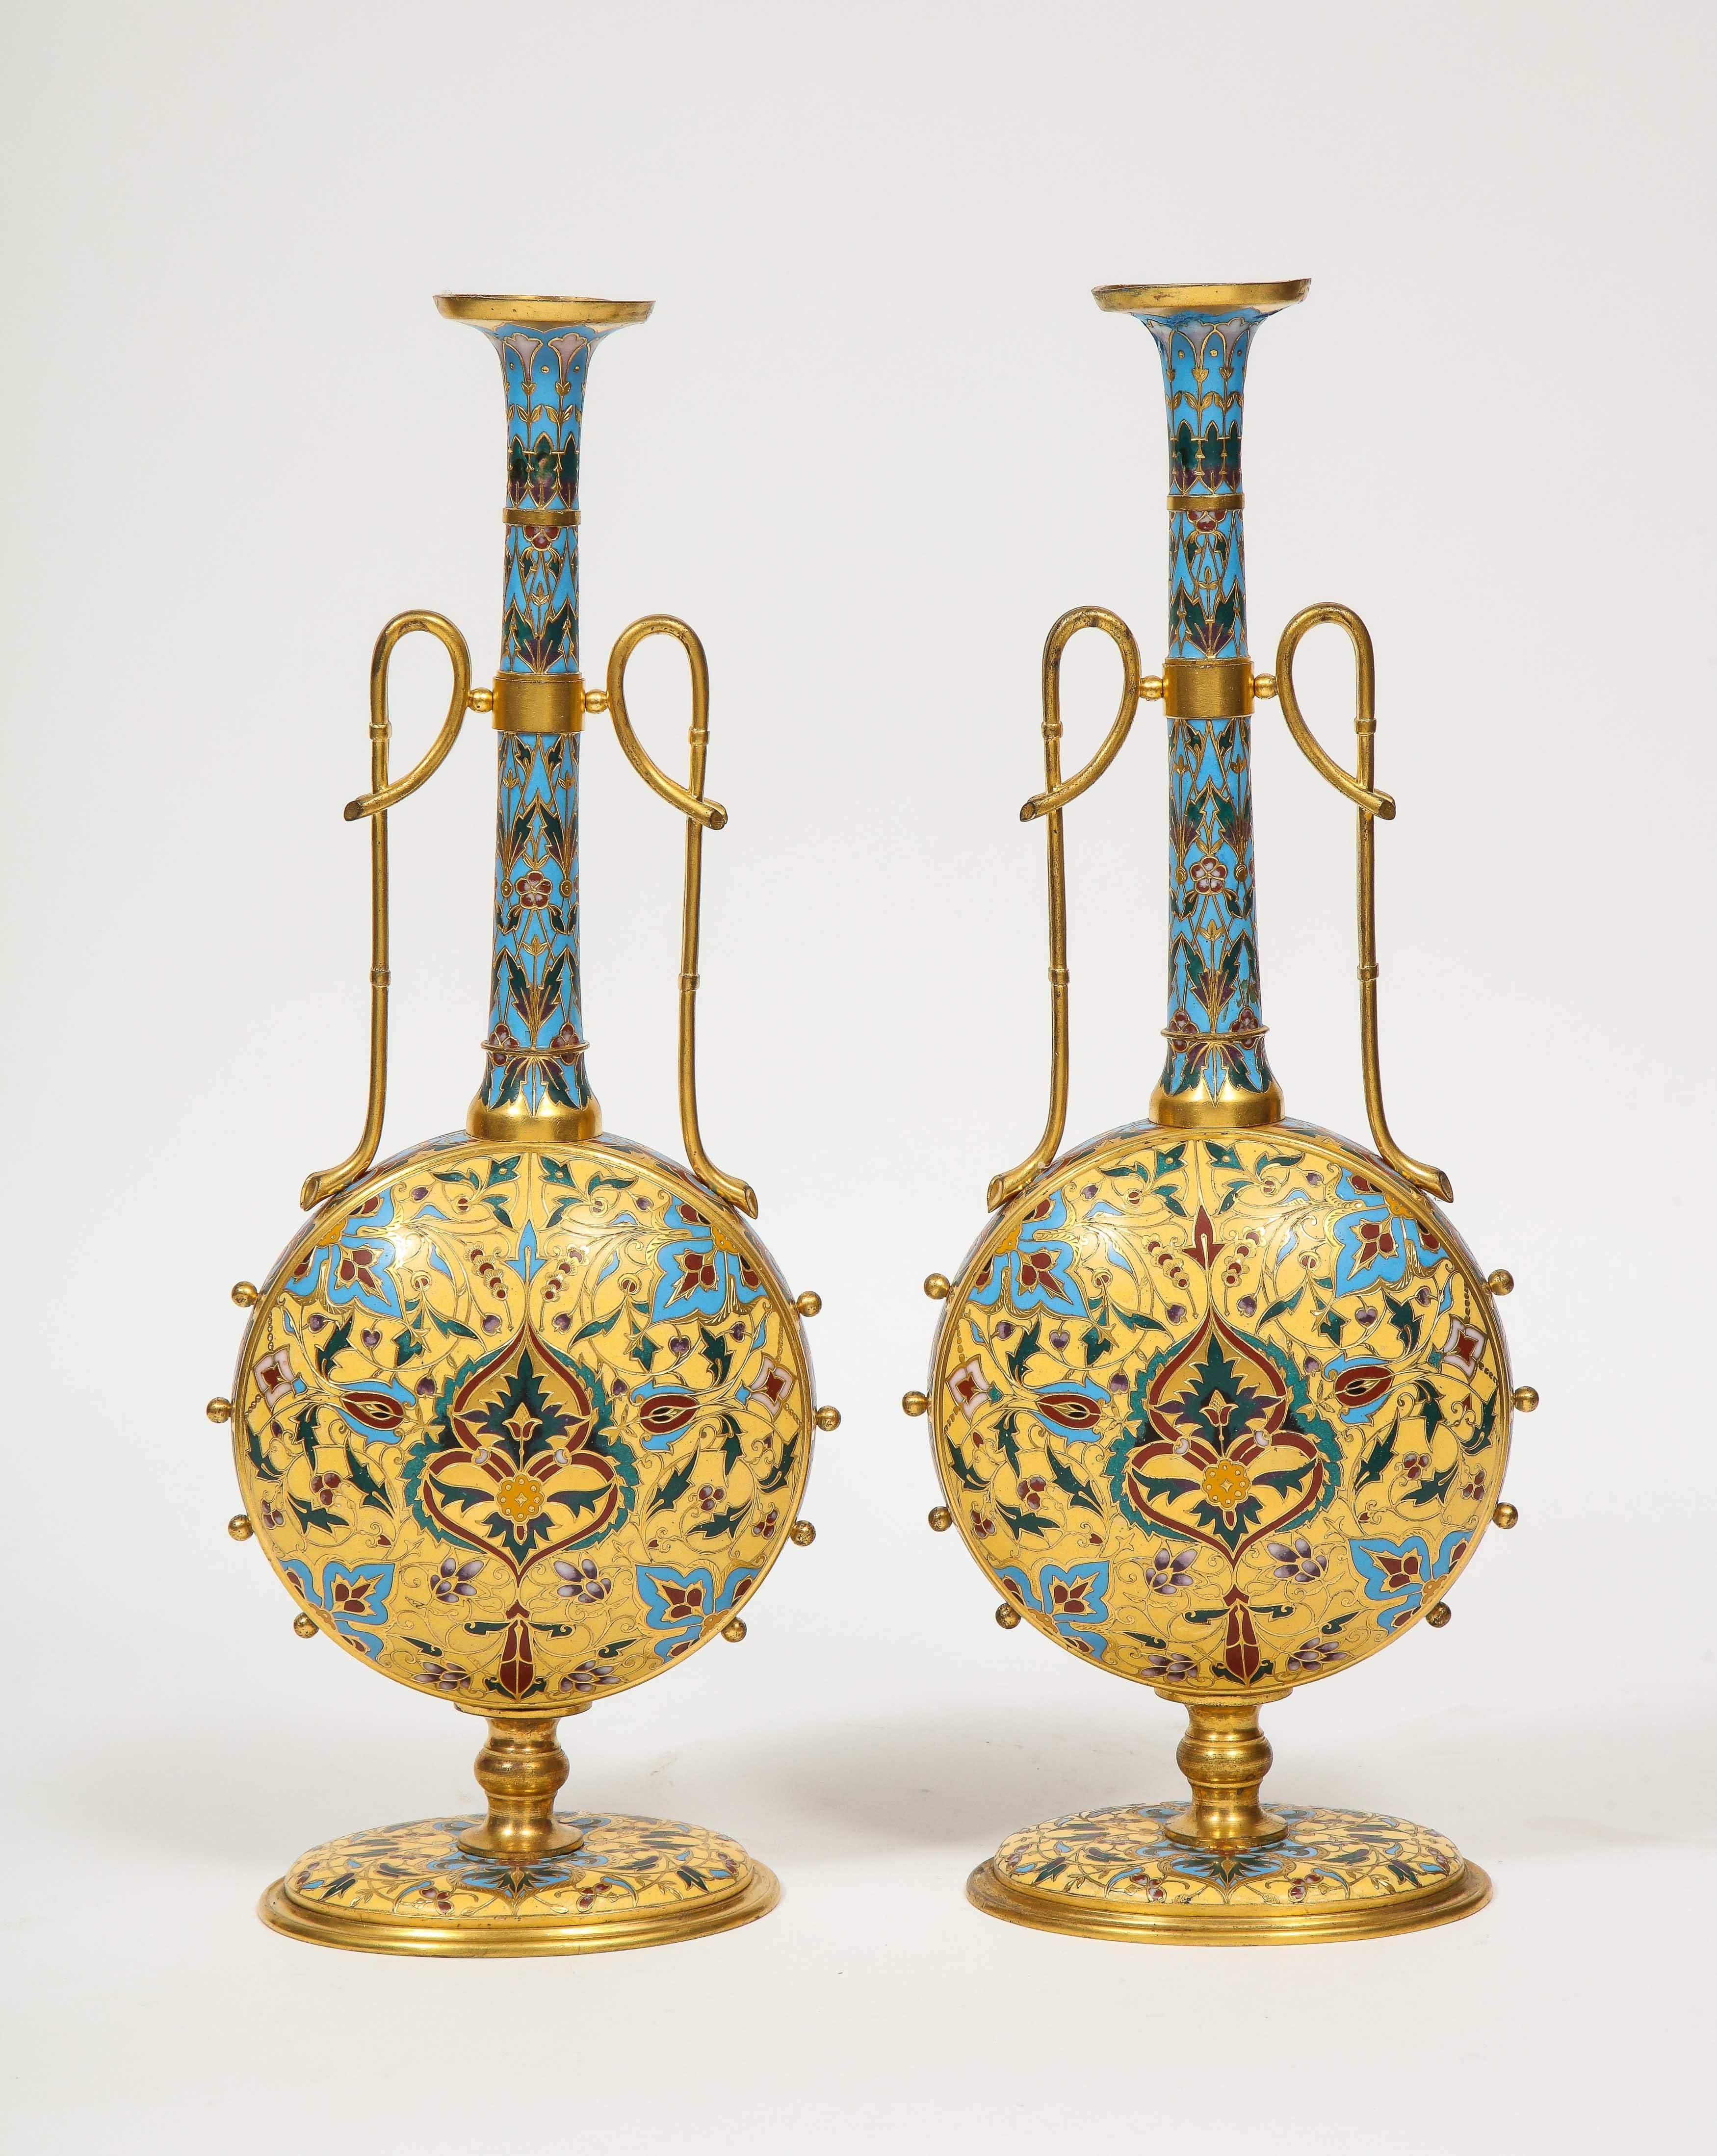 Ein äußerst seltenes Paar Ferdinand-Barbedienne-Vasen aus Ormolu und Champlevé-Email, um 1870, die sicherlich von Louis Constant Sevin entworfen wurden, in Museumsqualität. 

Sehr ungewöhnliche Form und Gestalt. Emailliert mit leuchtenden Farben,